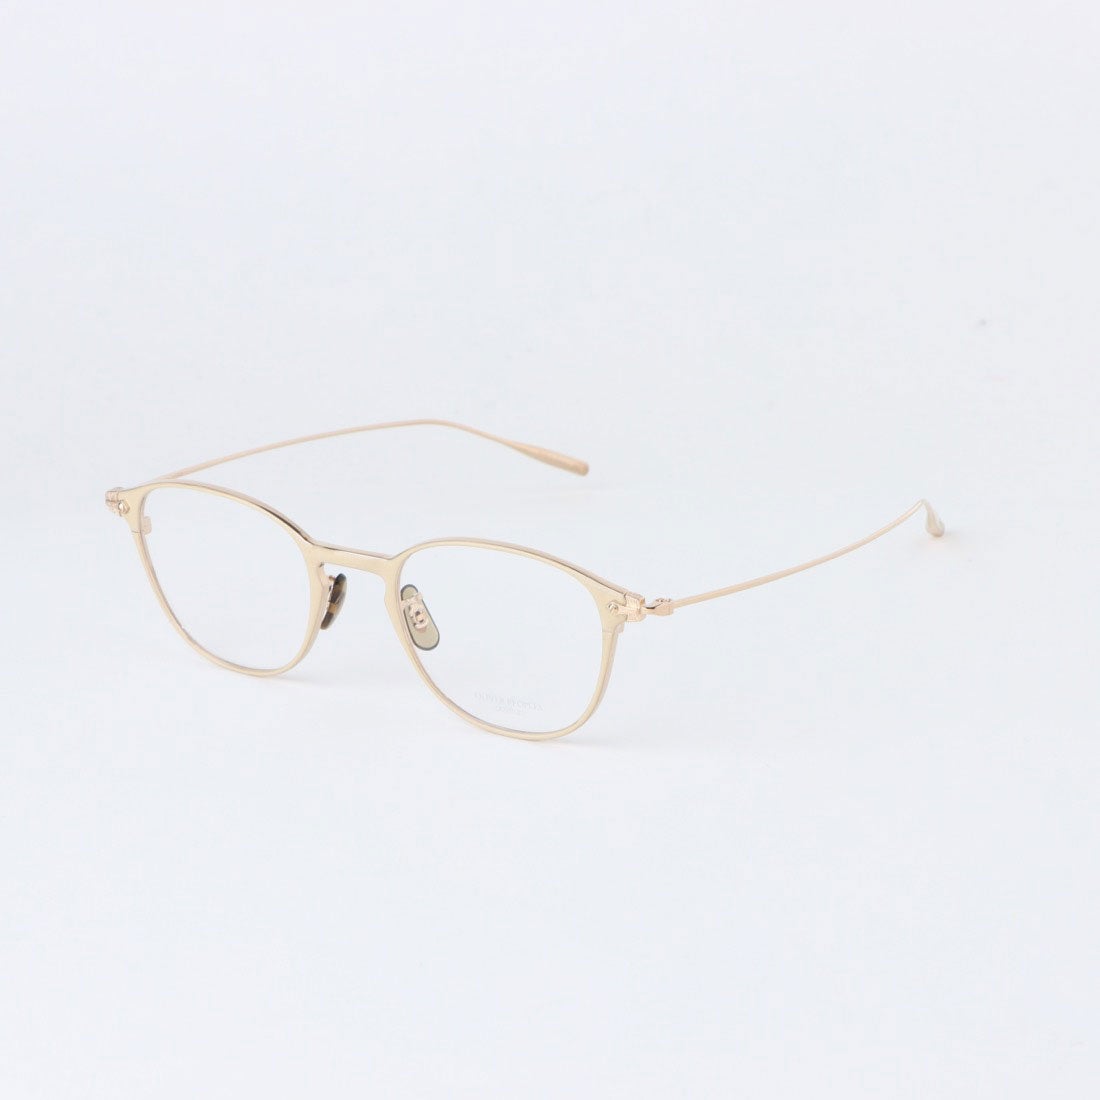 オリバーピープルズ OLIVER PEOPLES メガネ 眼鏡 アイウェア レディース メンズ （ホワイト/ゴールド）